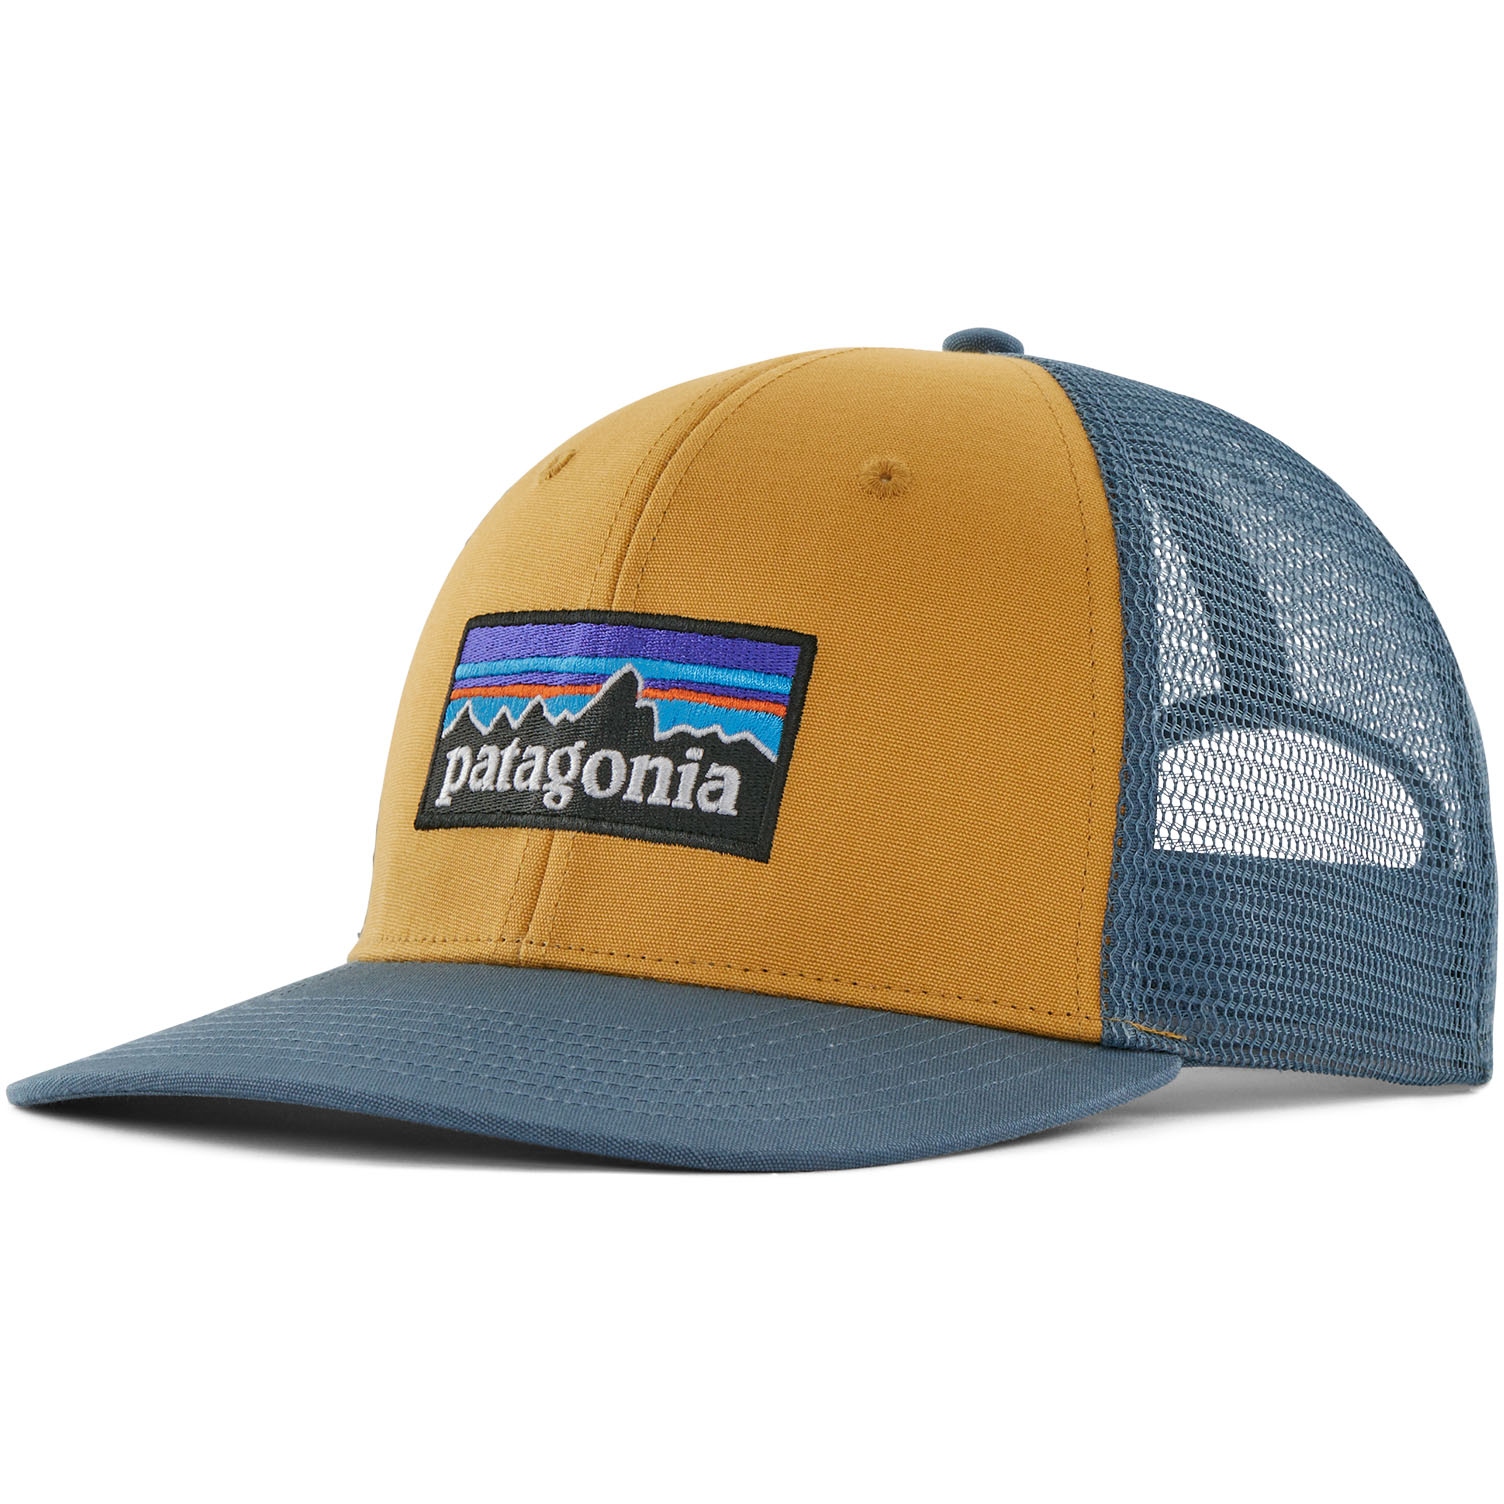 Produktbild von Patagonia P-6 Logo Trucker Cap - Pufferfish Gold